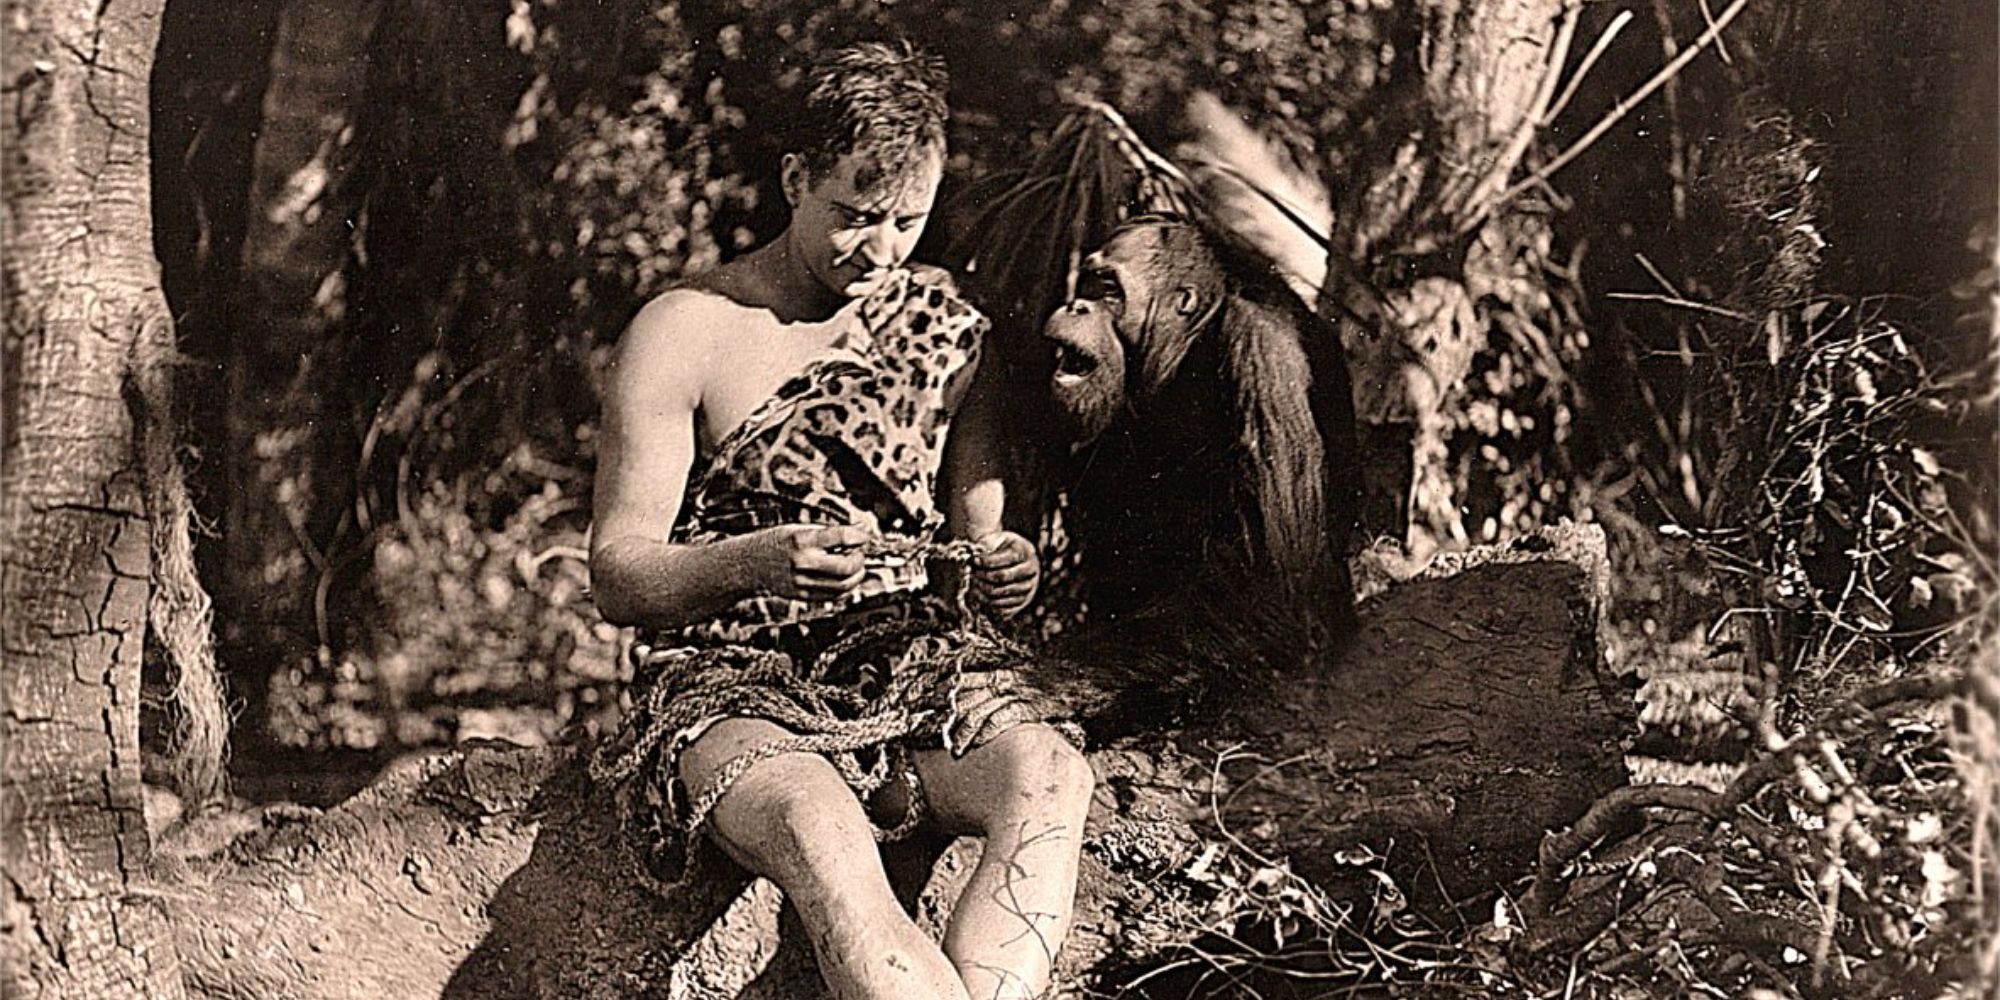 Gene Pollar in Tarzan